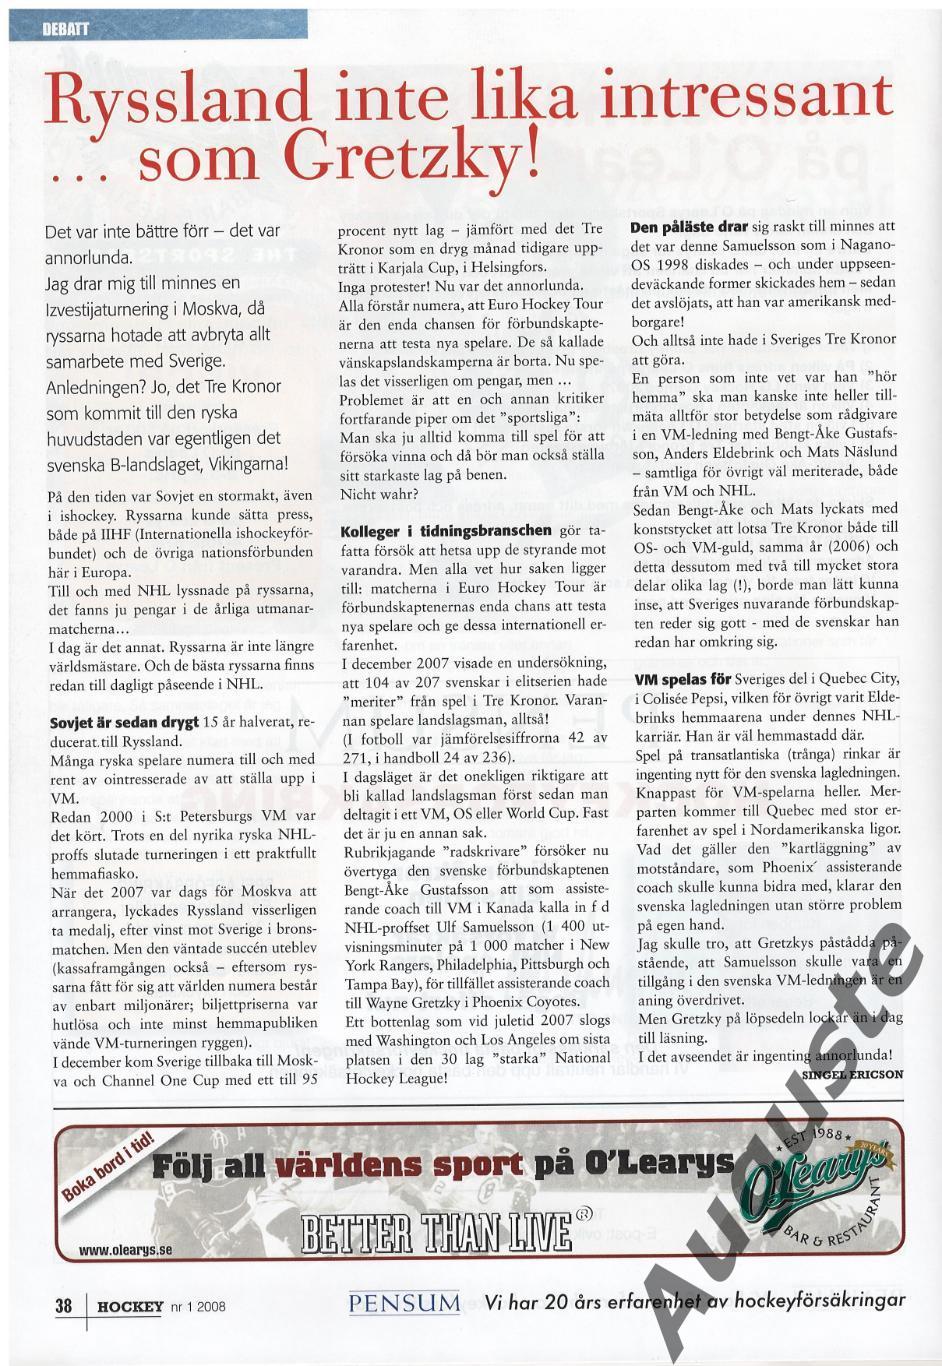 Журнал ХОККЕЙ № 1 - 2008. Швеция. Материалы к Шведским хоккейным играм. 4